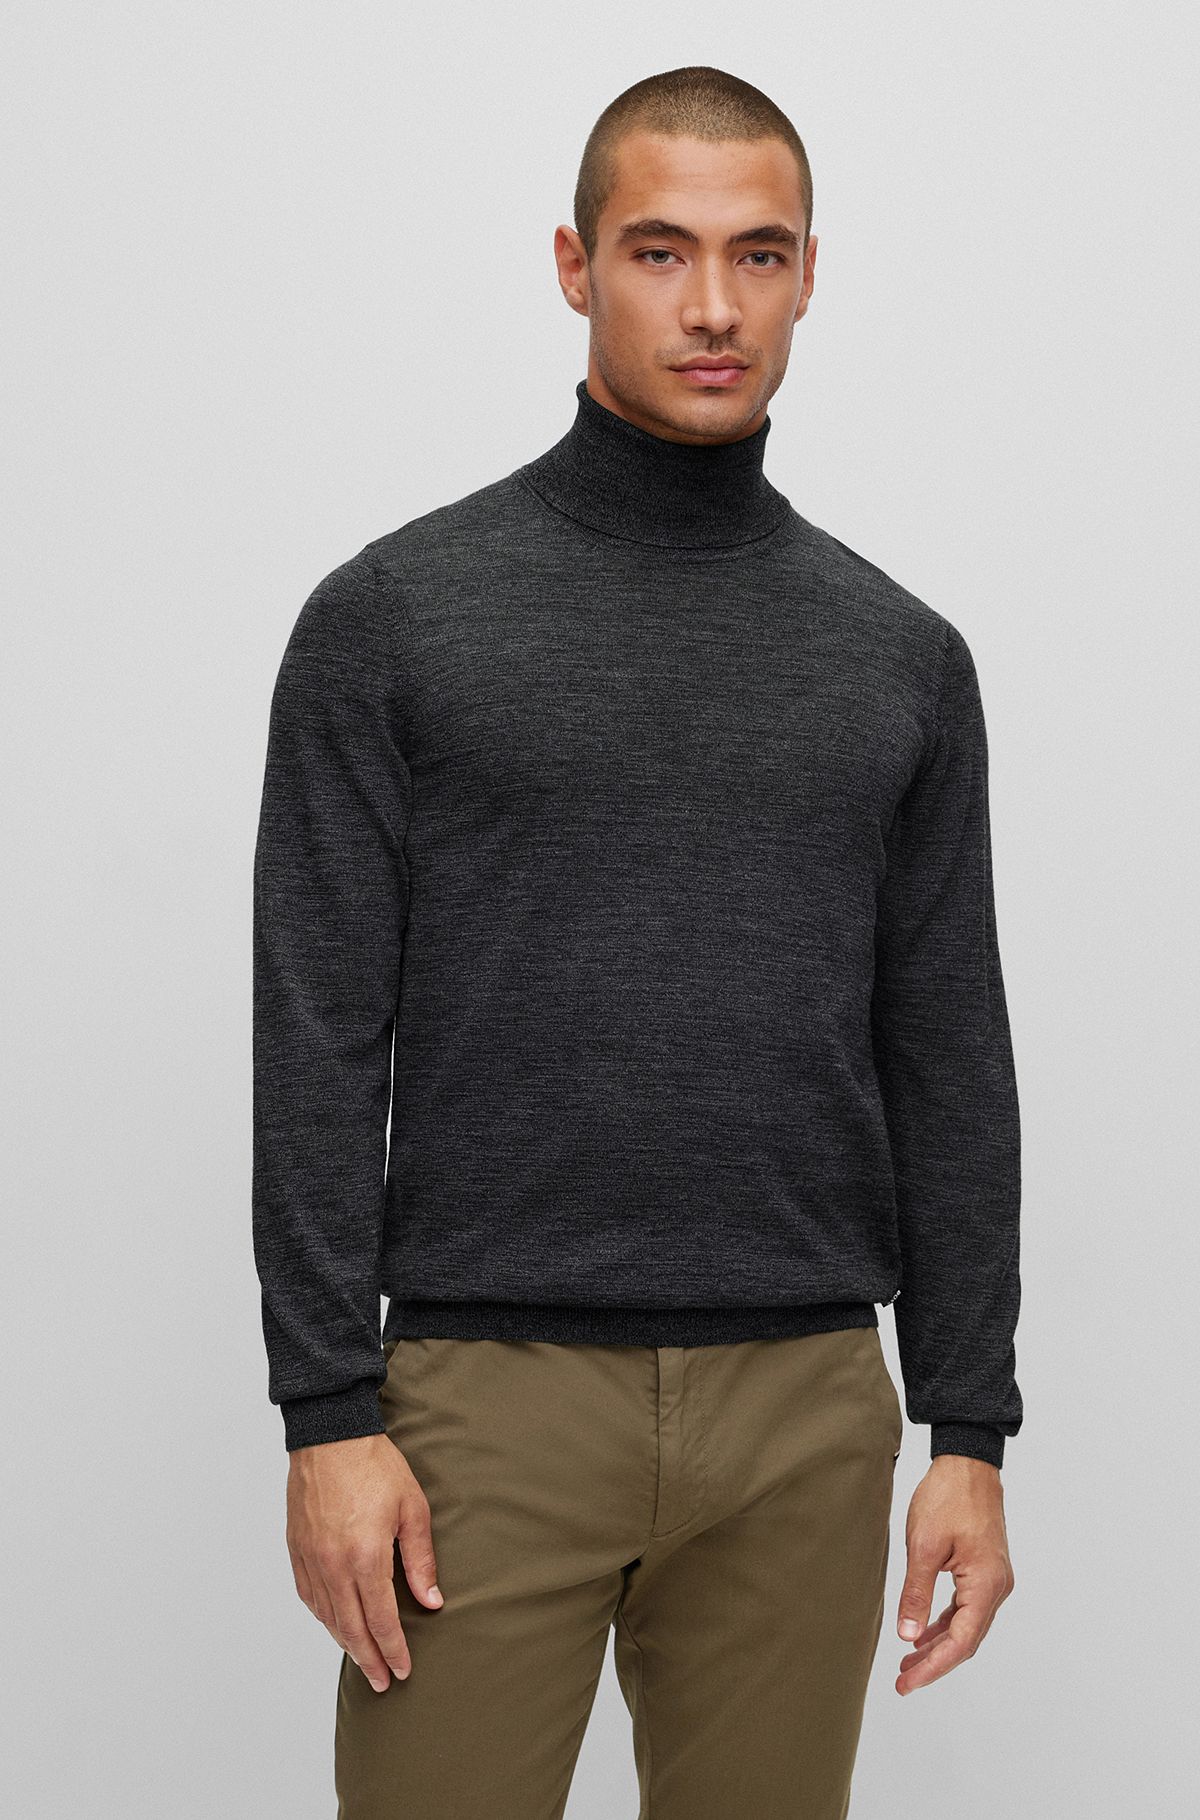 Turtleneck Sweaters in Black by HUGO BOSS